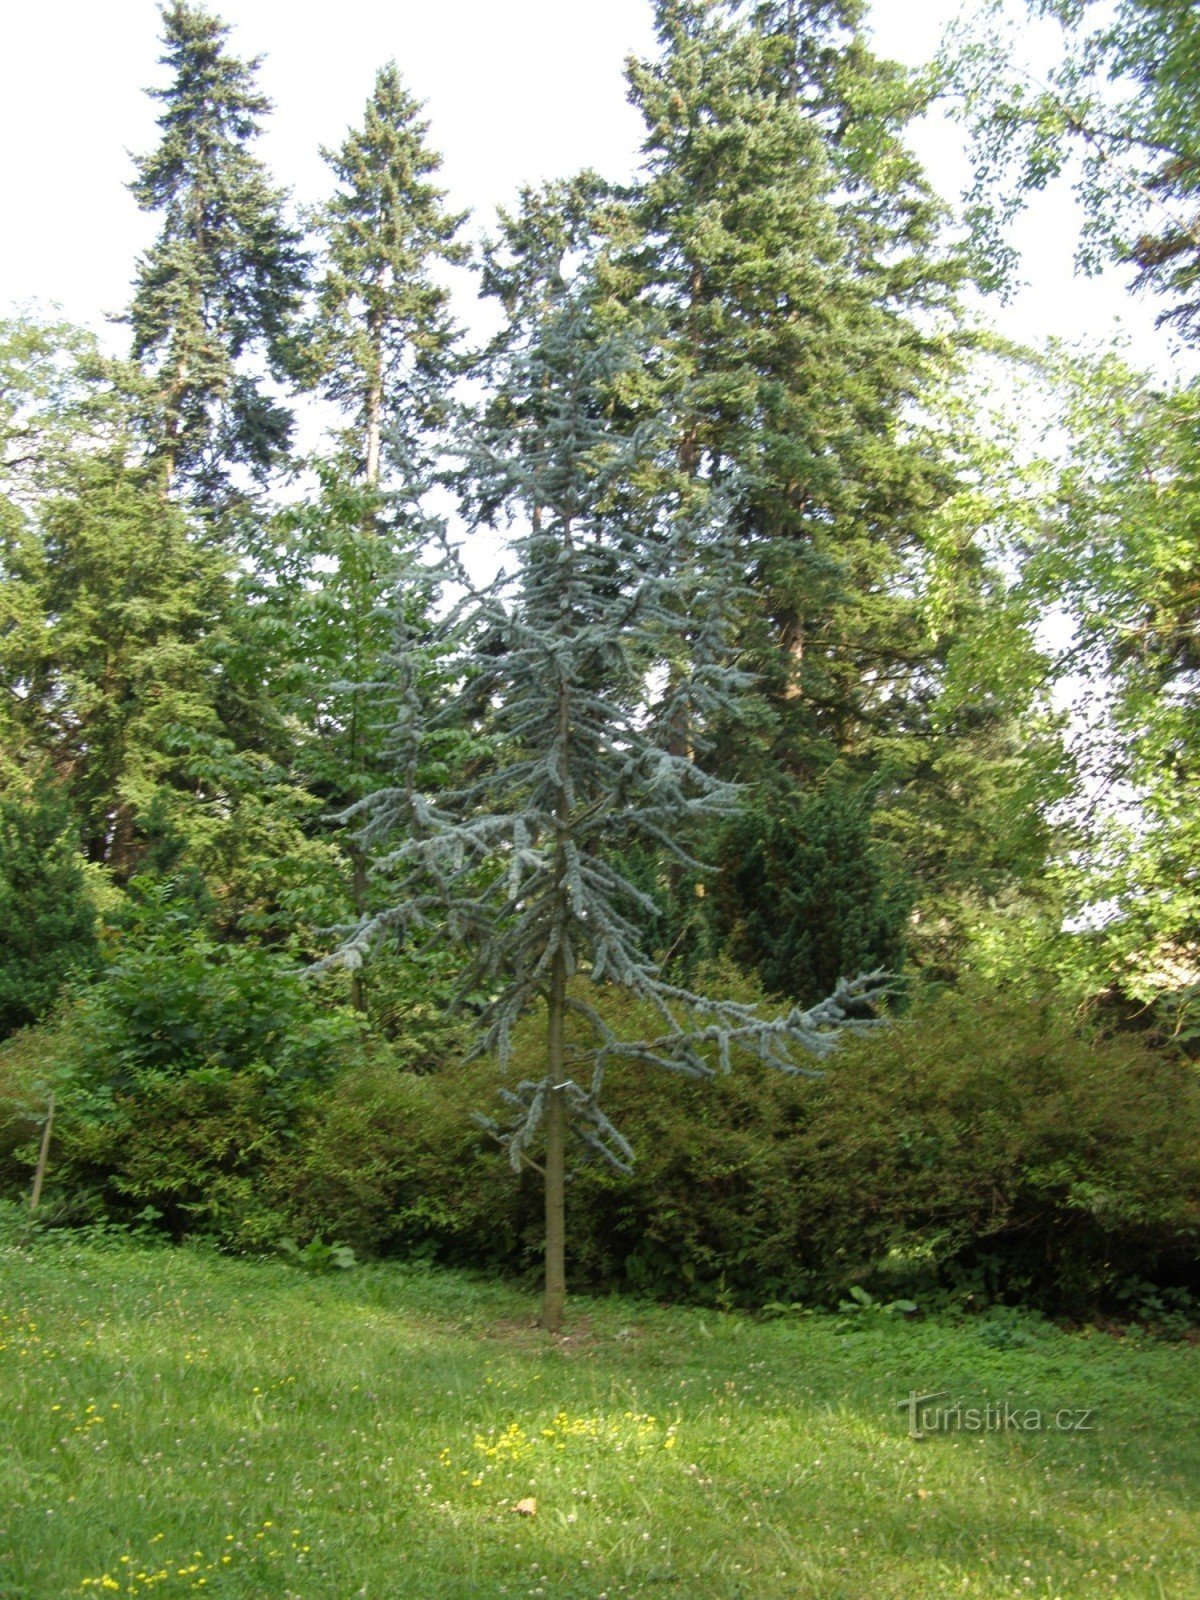 Arboretum Nový Dvůr cerca de Opava